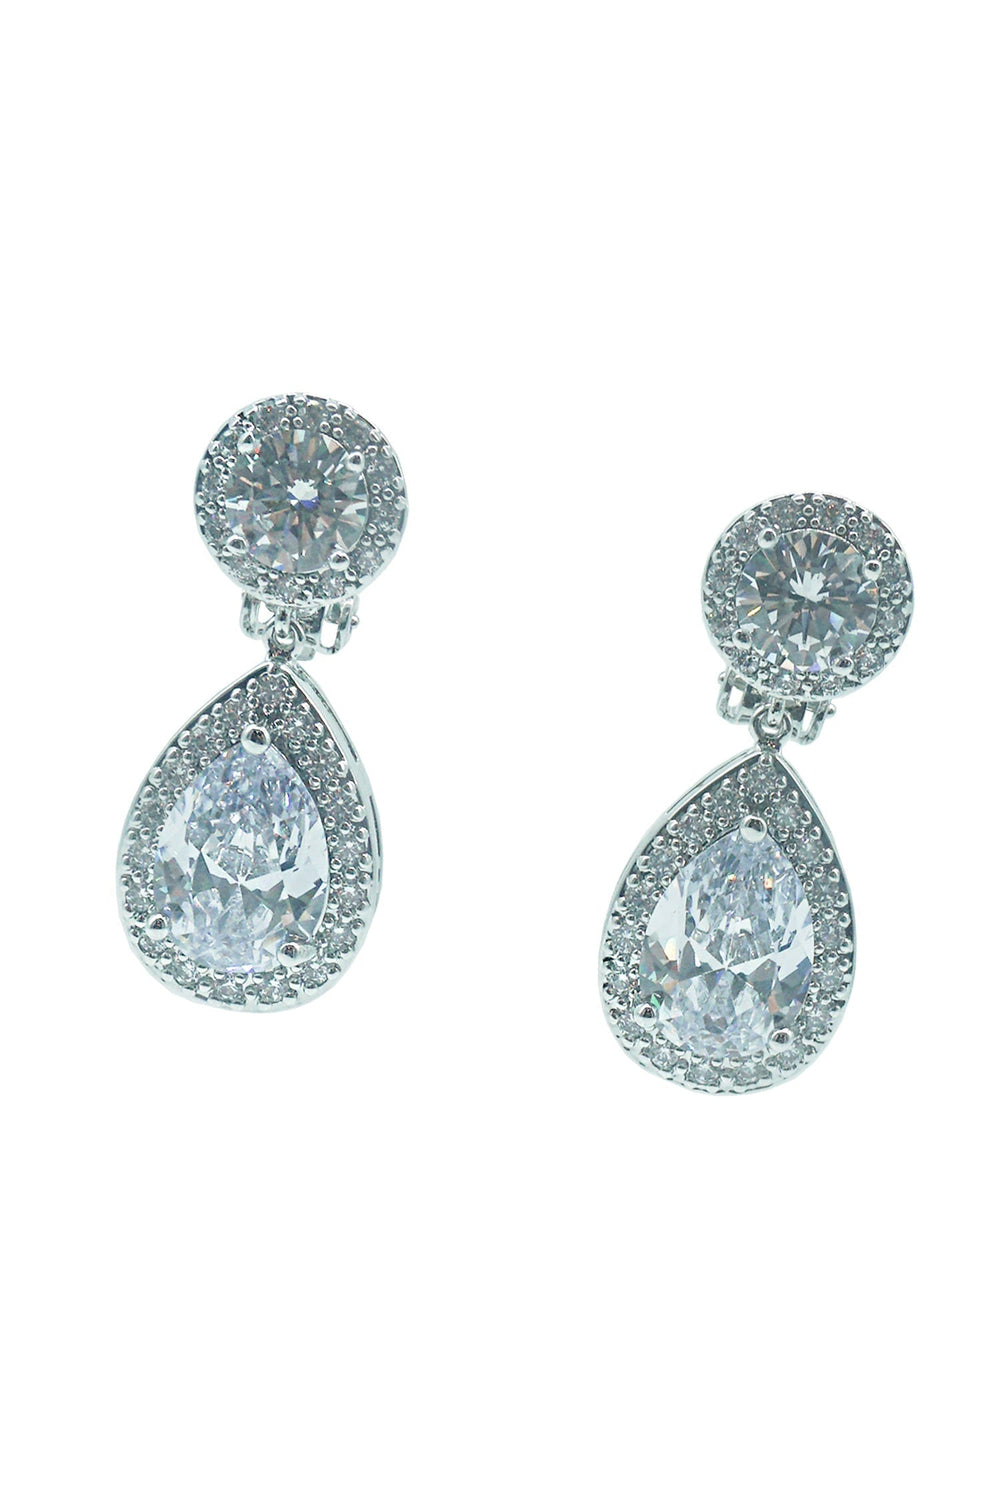 Belen Silver Diamante Drop Earrings